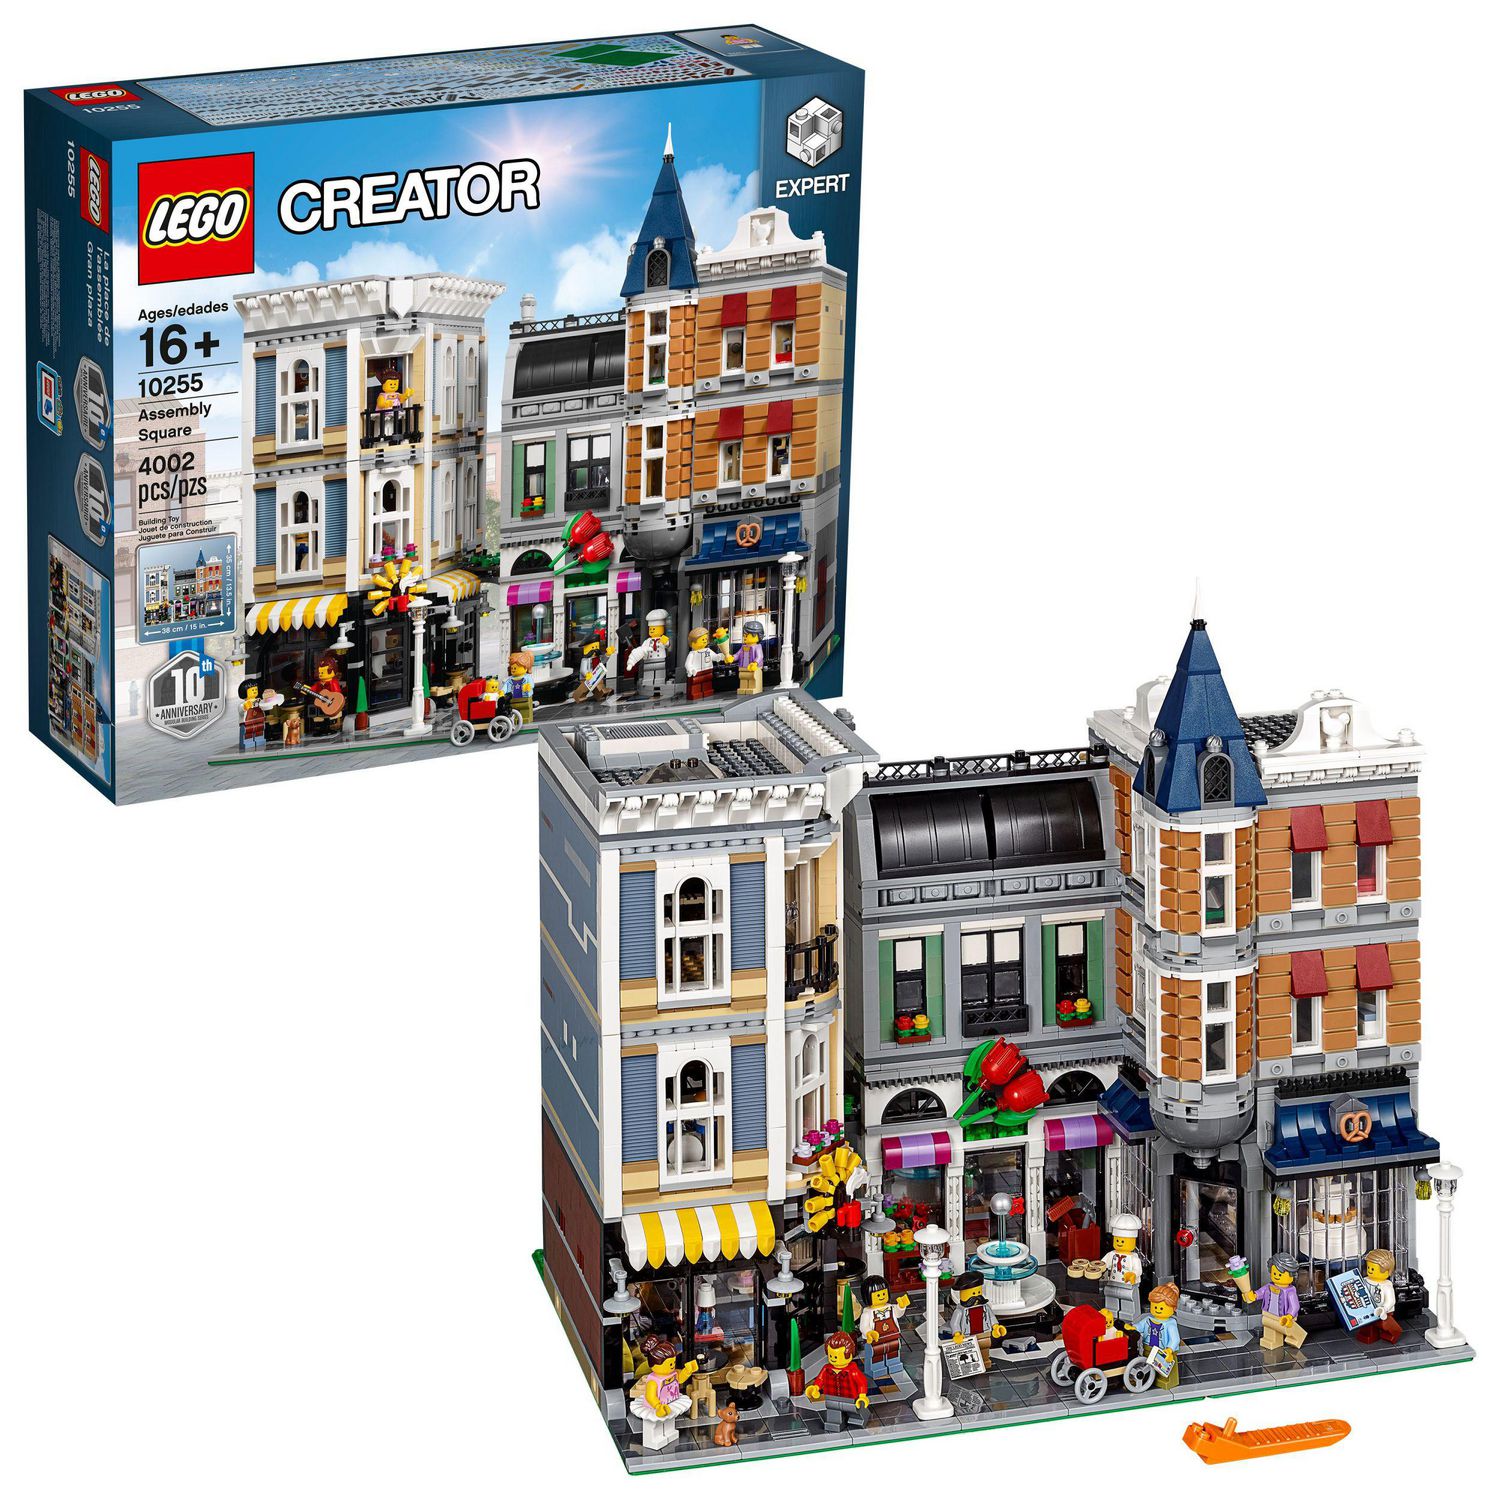 LEGO Plaque de base bleue (620) au meilleur prix sur